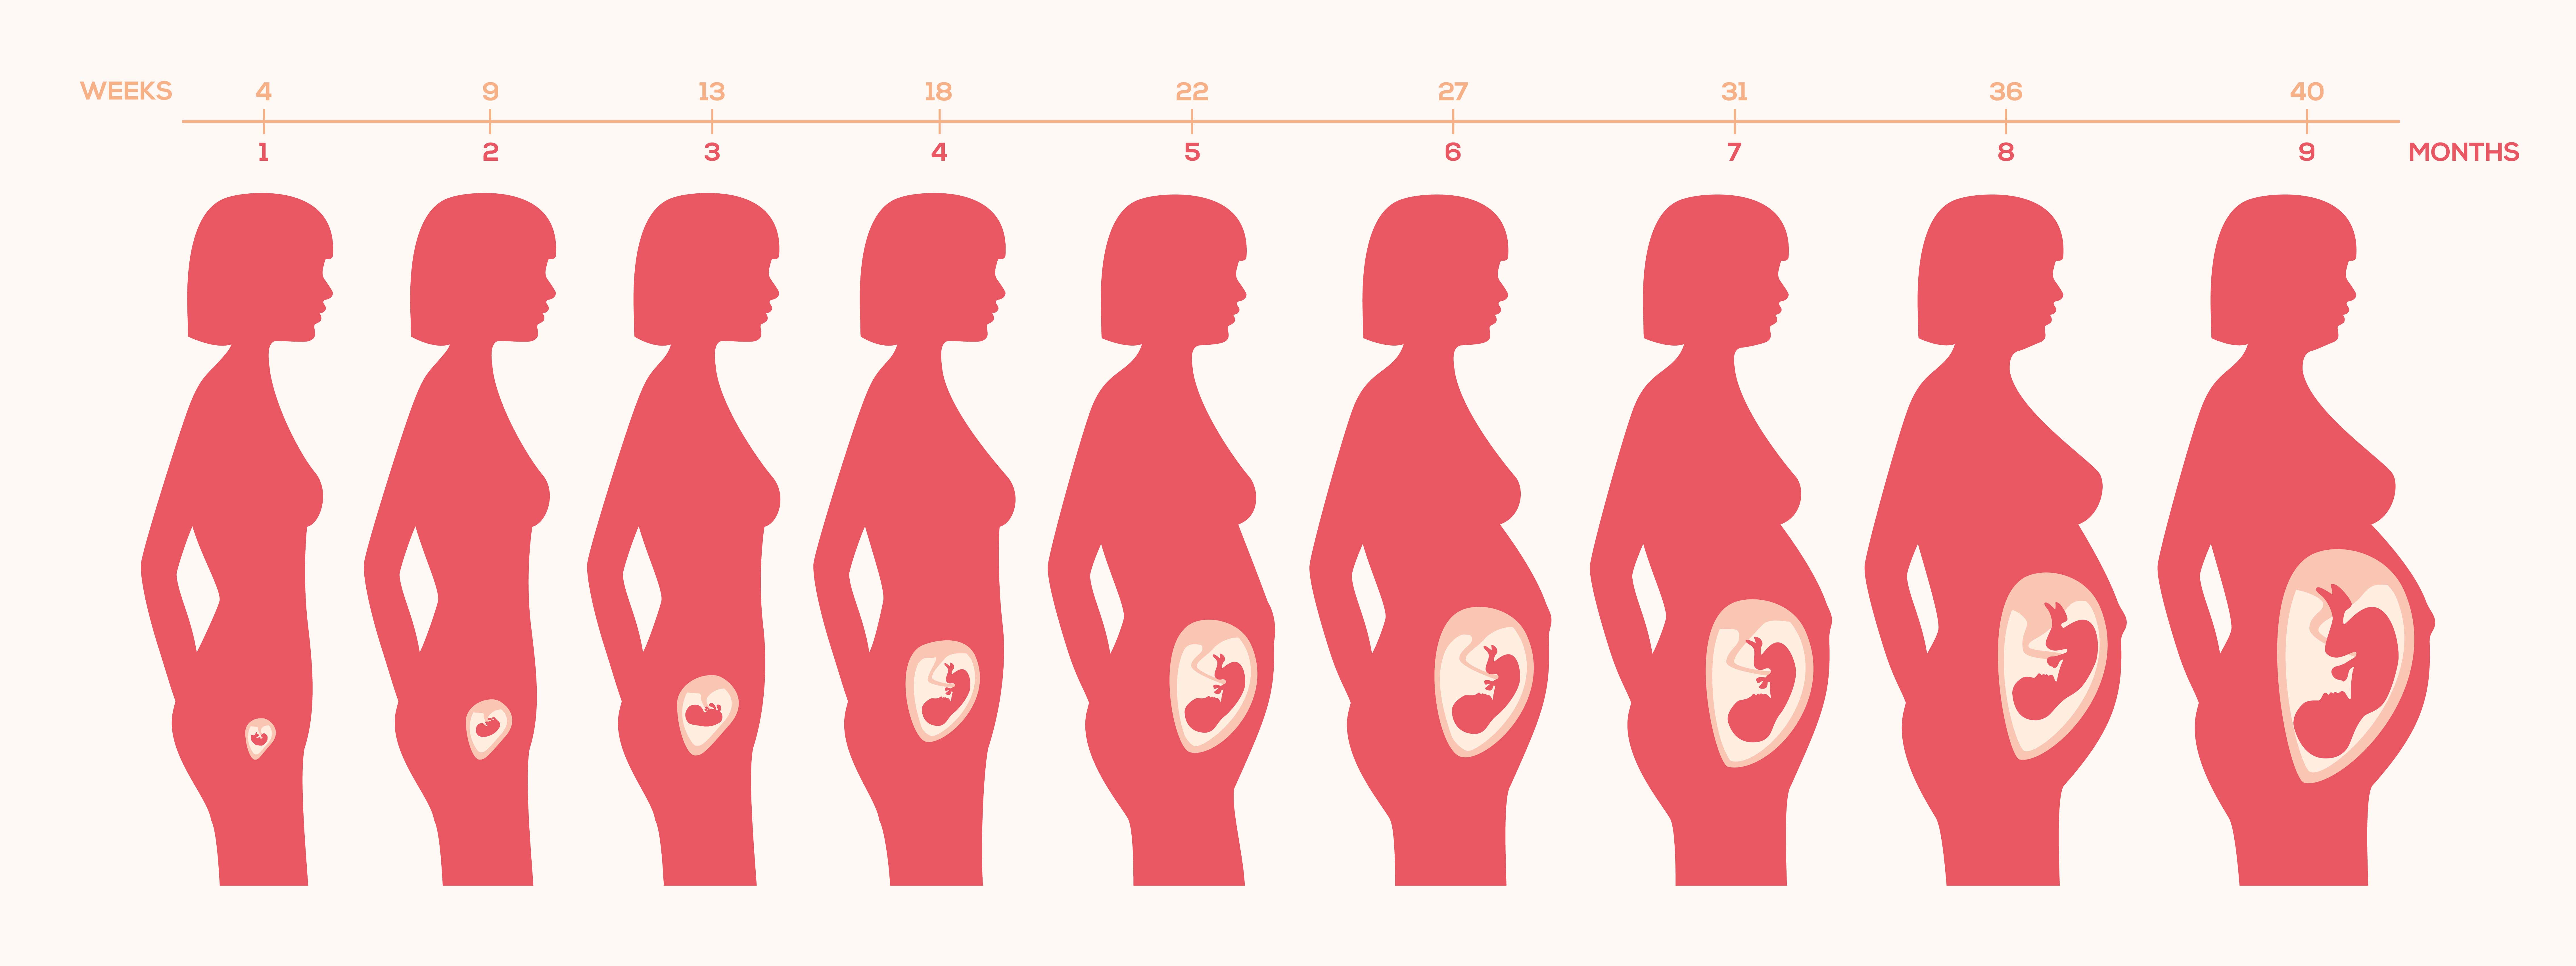 etapas embarazo meses